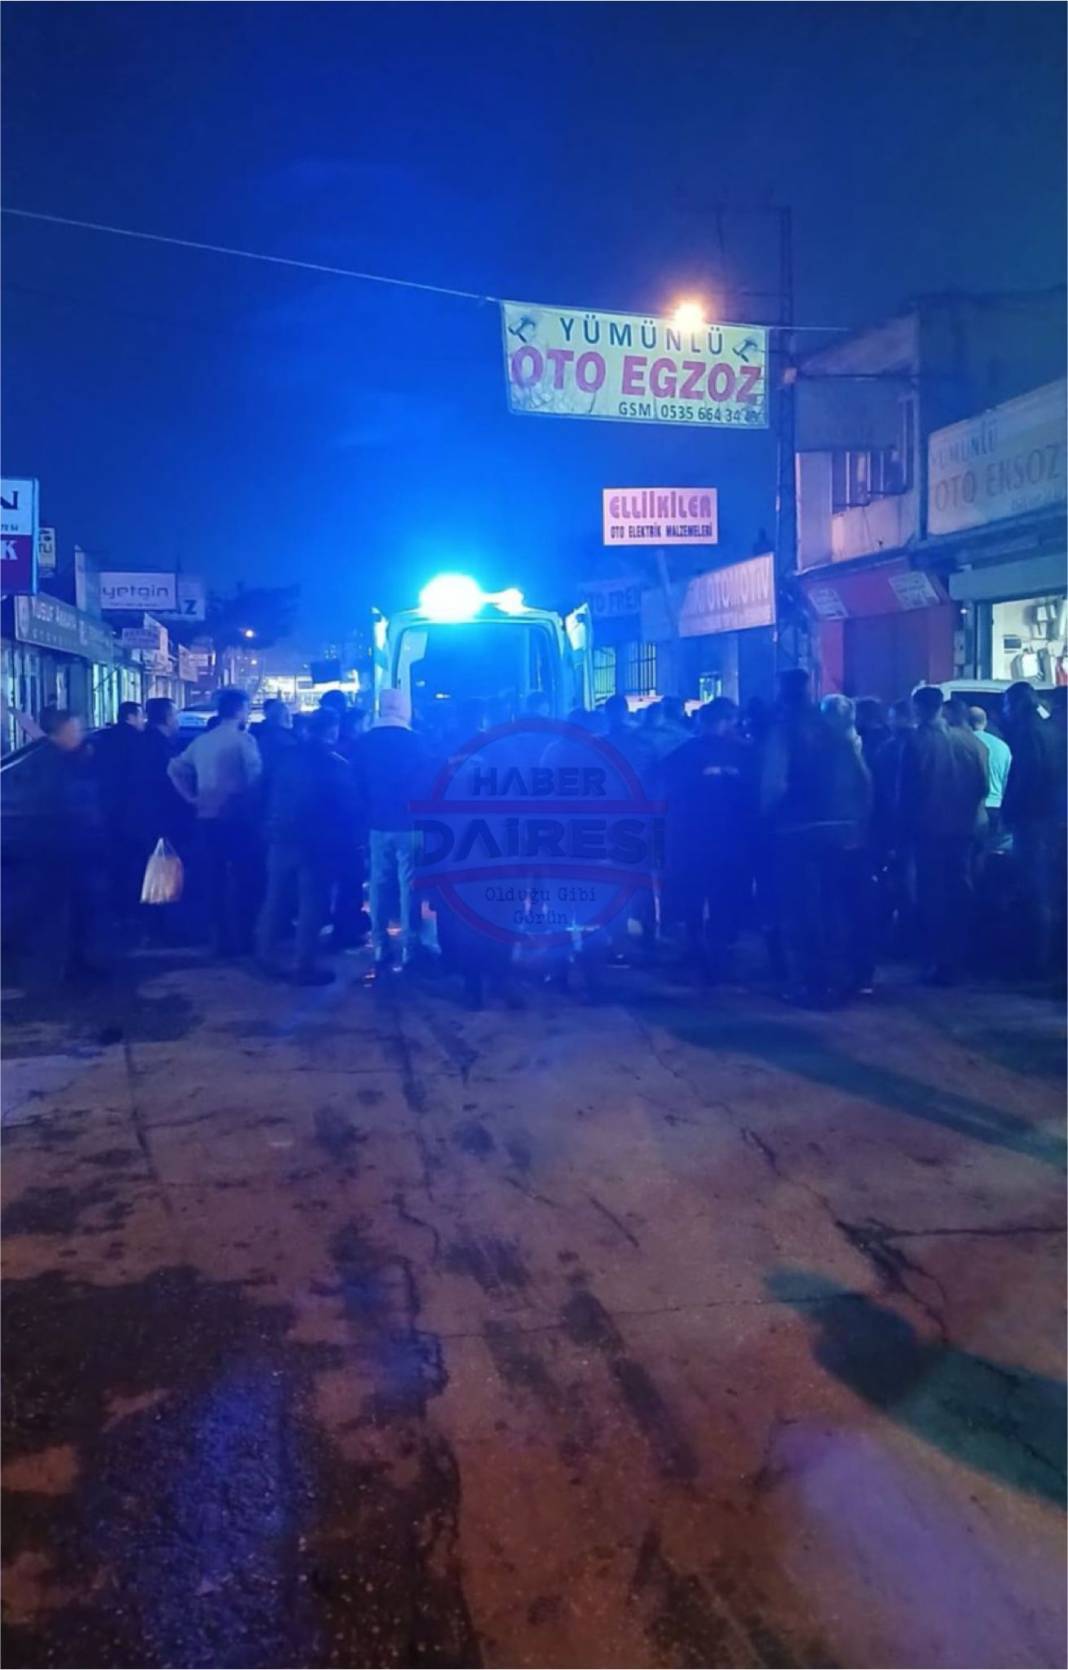 Konya’da intikam cinayeti! Cezası belli oldu, gerekçesi açıklandı 6